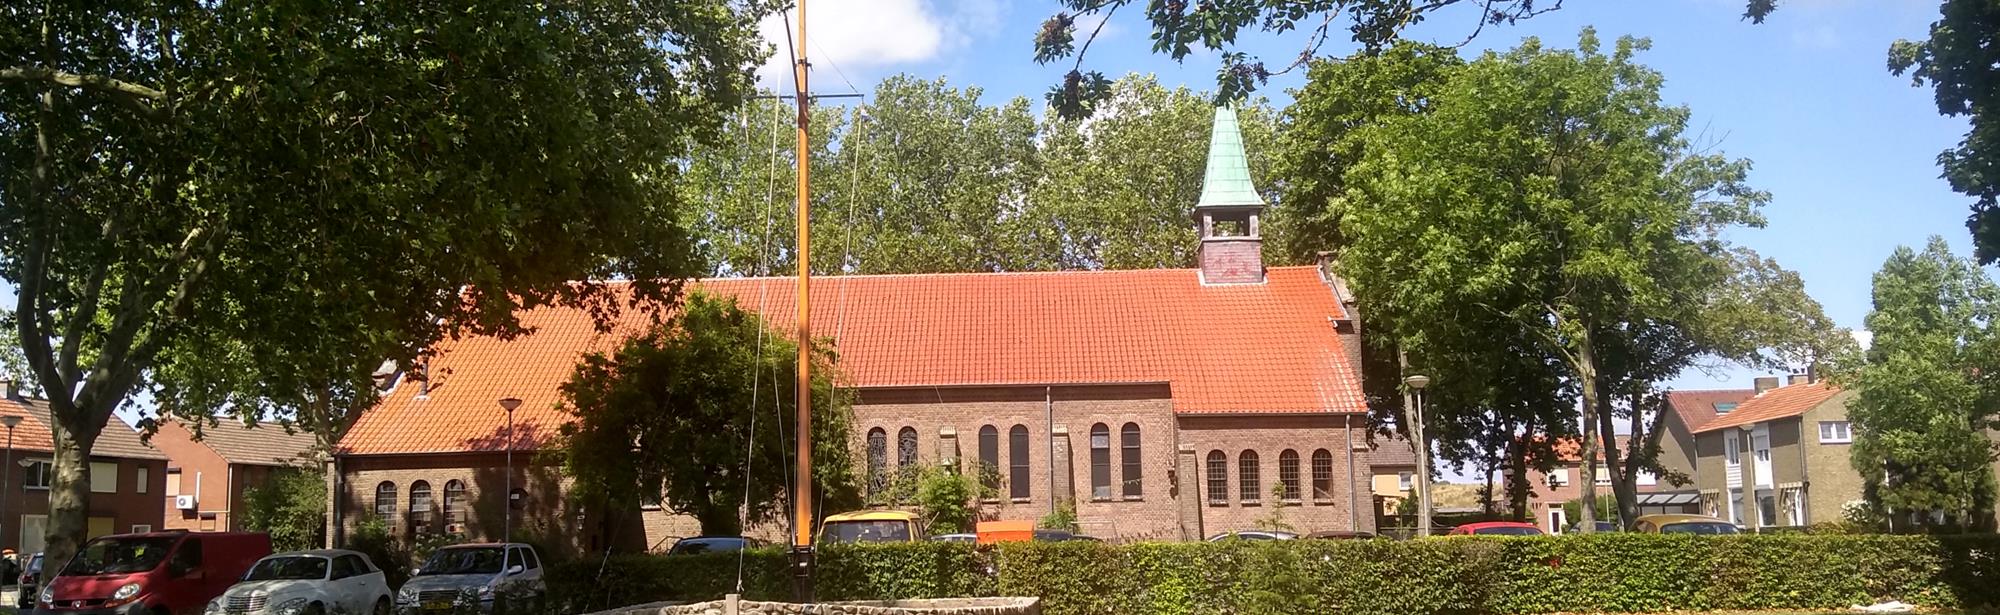 Schipperskerk